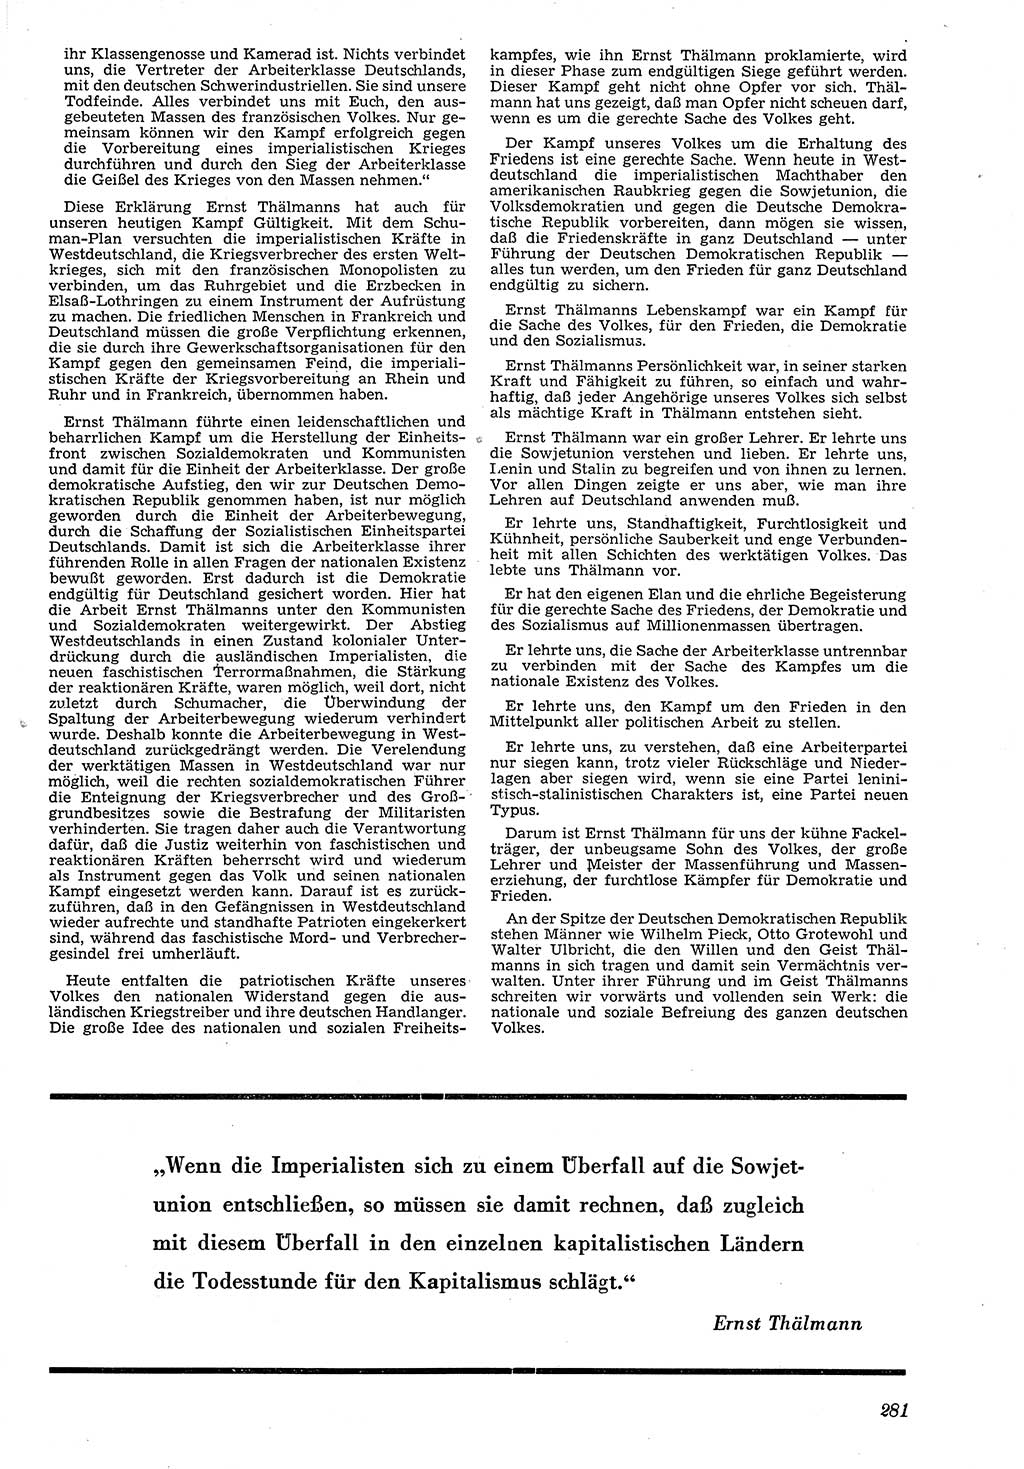 Neue Justiz (NJ), Zeitschrift für Recht und Rechtswissenschaft [Deutsche Demokratische Republik (DDR)], 4. Jahrgang 1950, Seite 281 (NJ DDR 1950, S. 281)